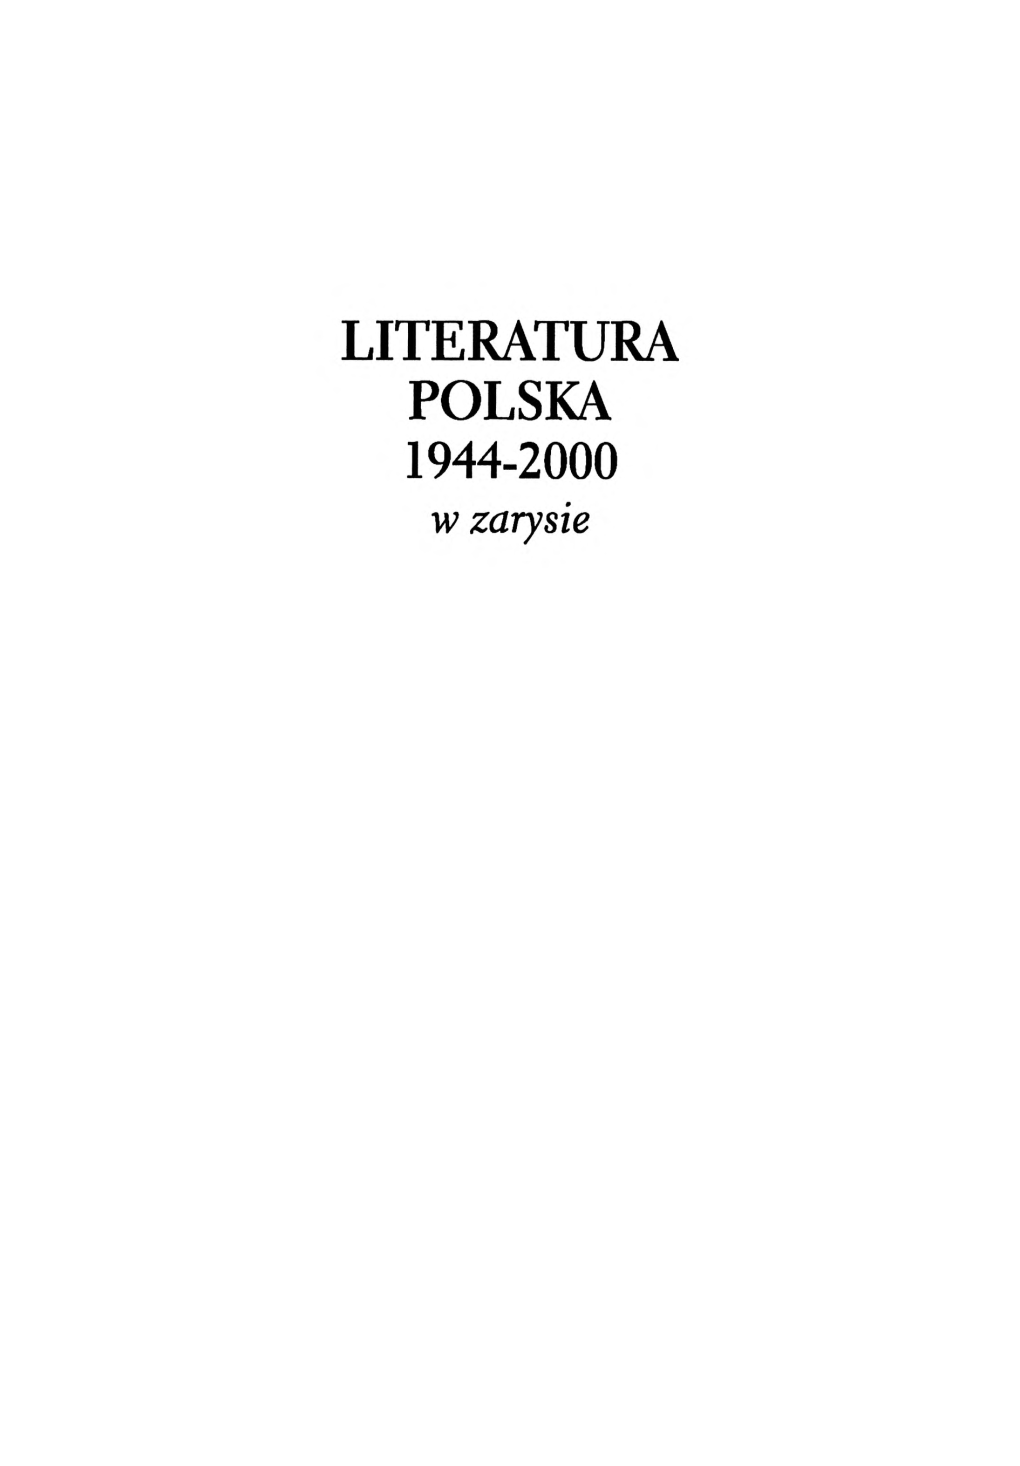 LITERATURA POLSKA 1944-2000 W Zarysie